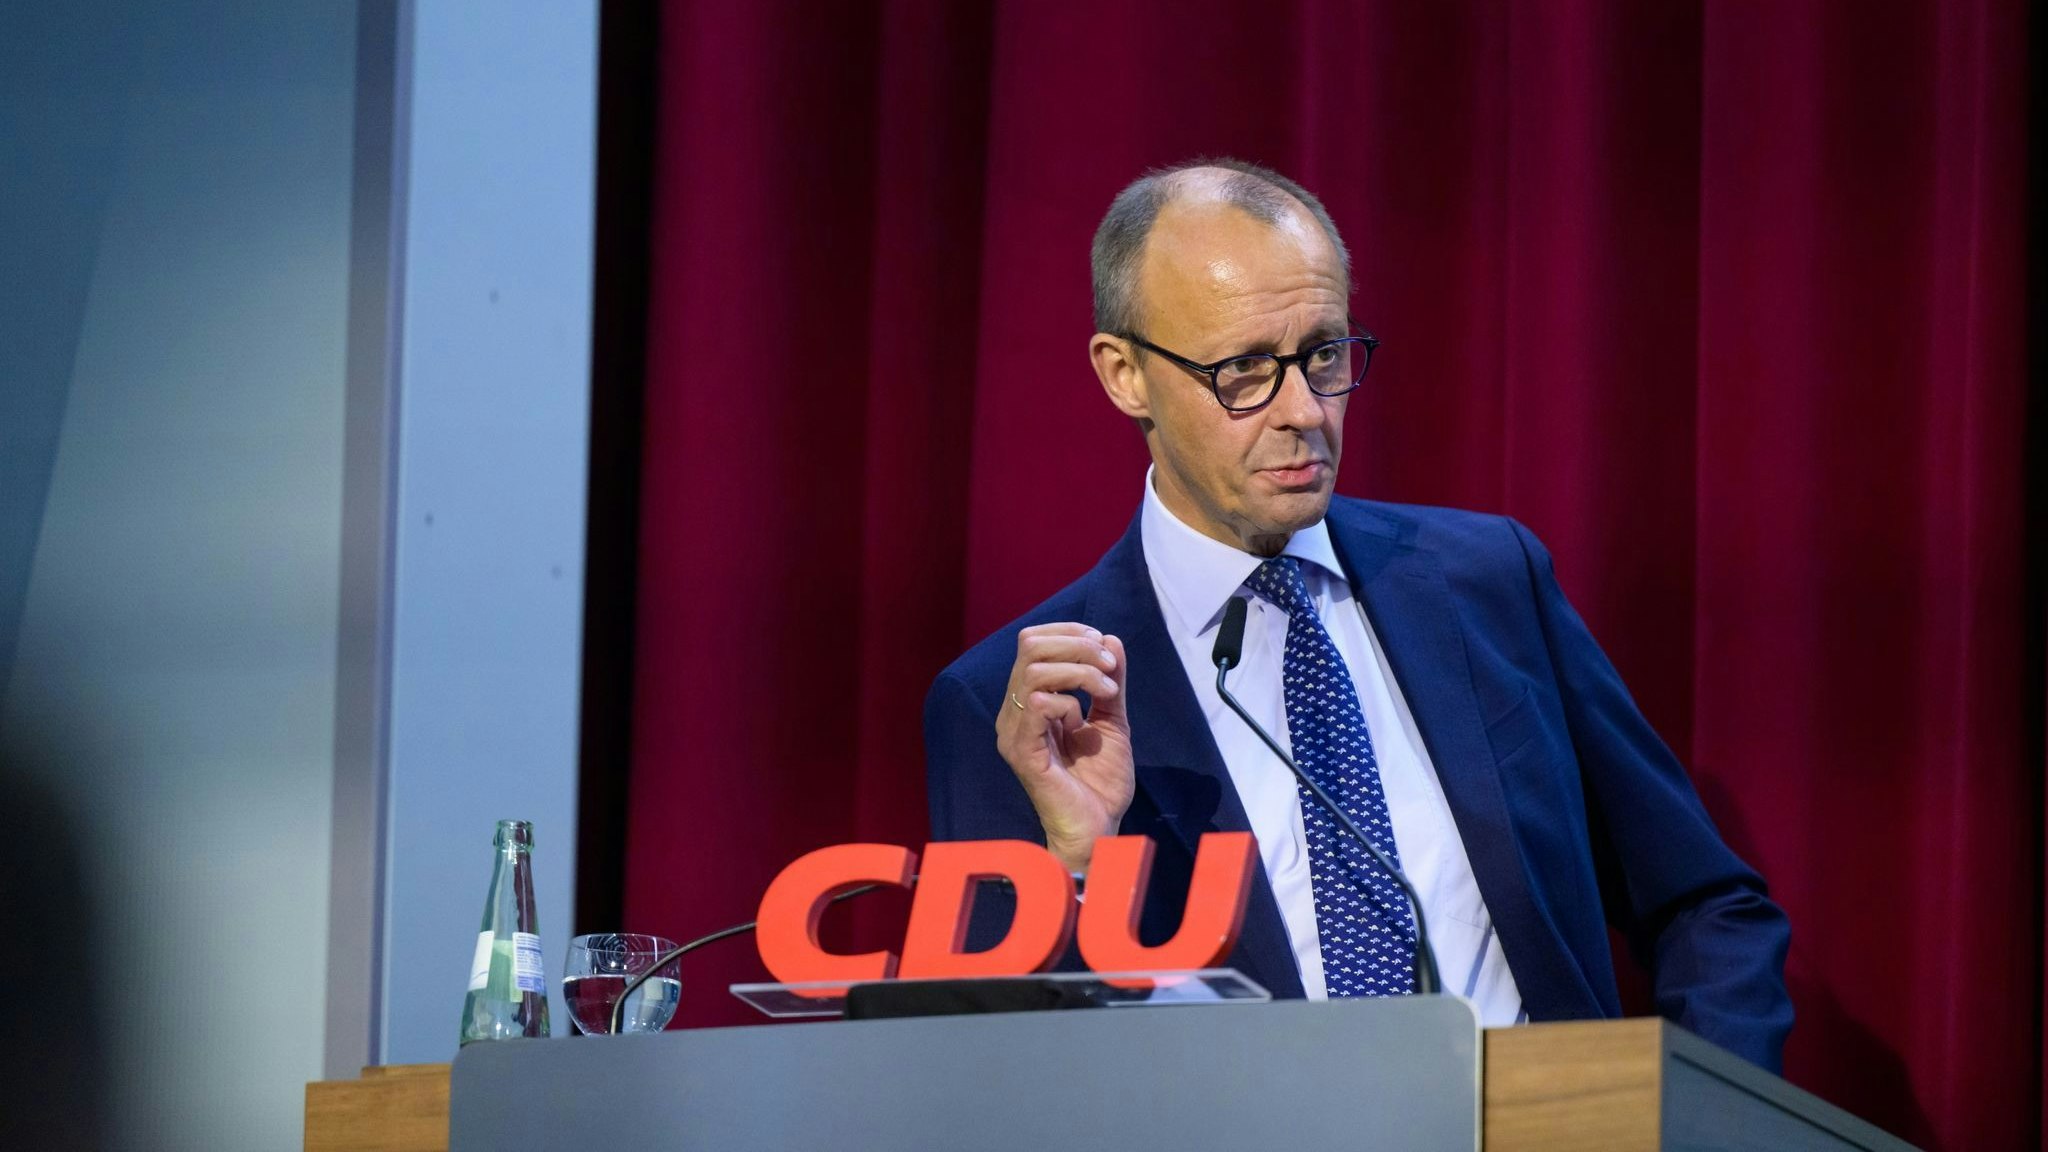 Friedrich Merz ist Bundesvorsitzender der CDU. Foto: dpa/Schulze